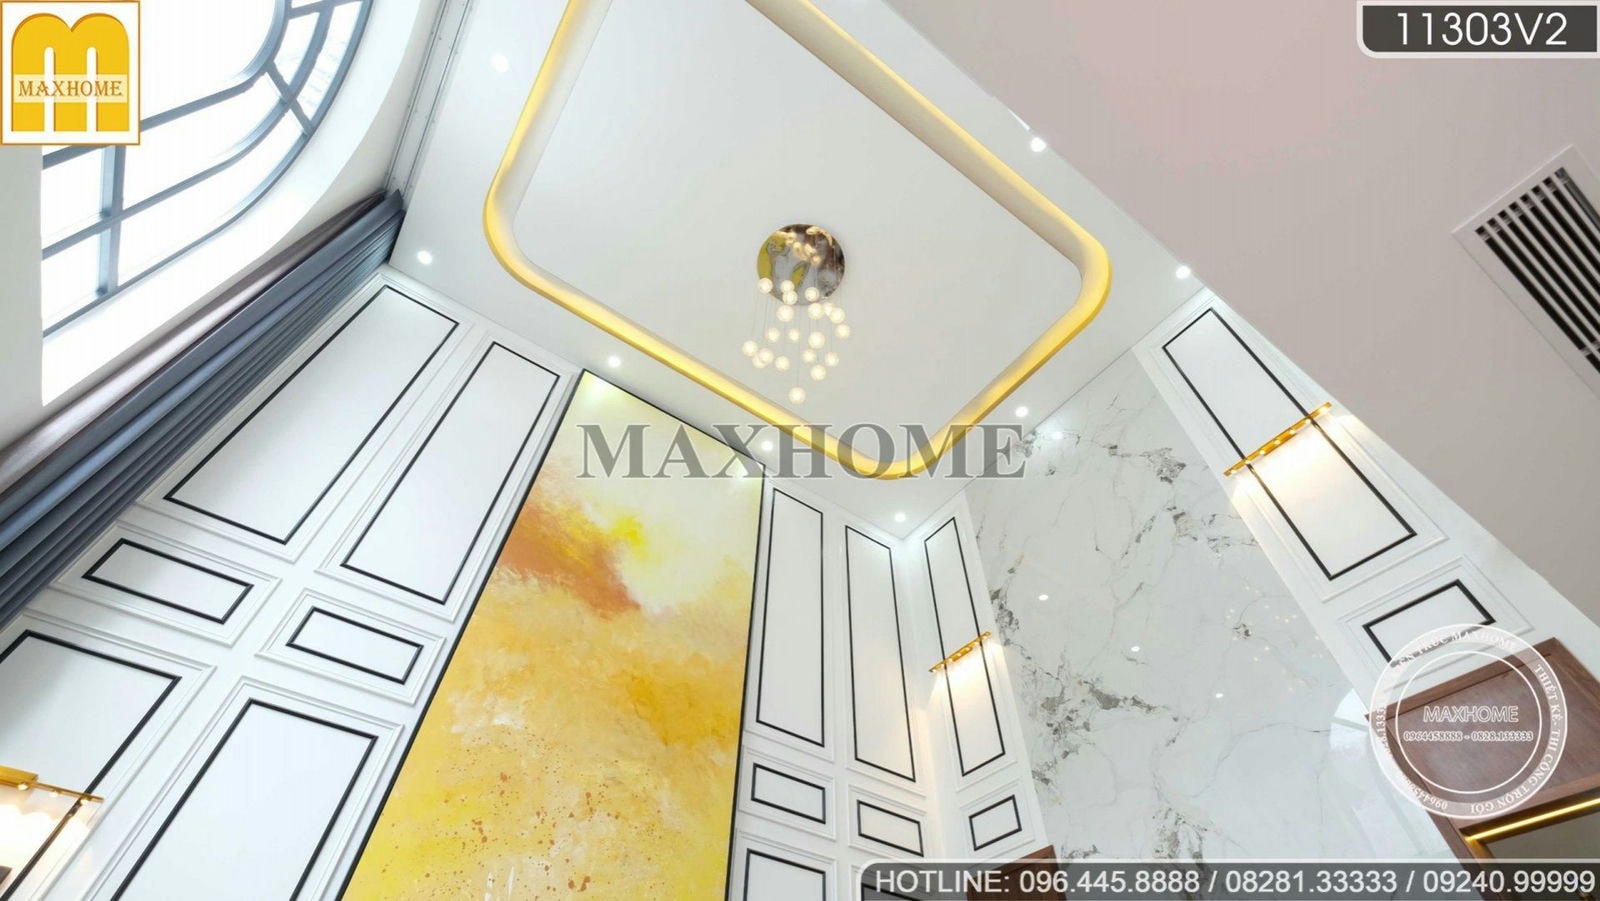 Maxhome thi công nội thất cho căn biệt thự đẹp và cao cấp | MH01169